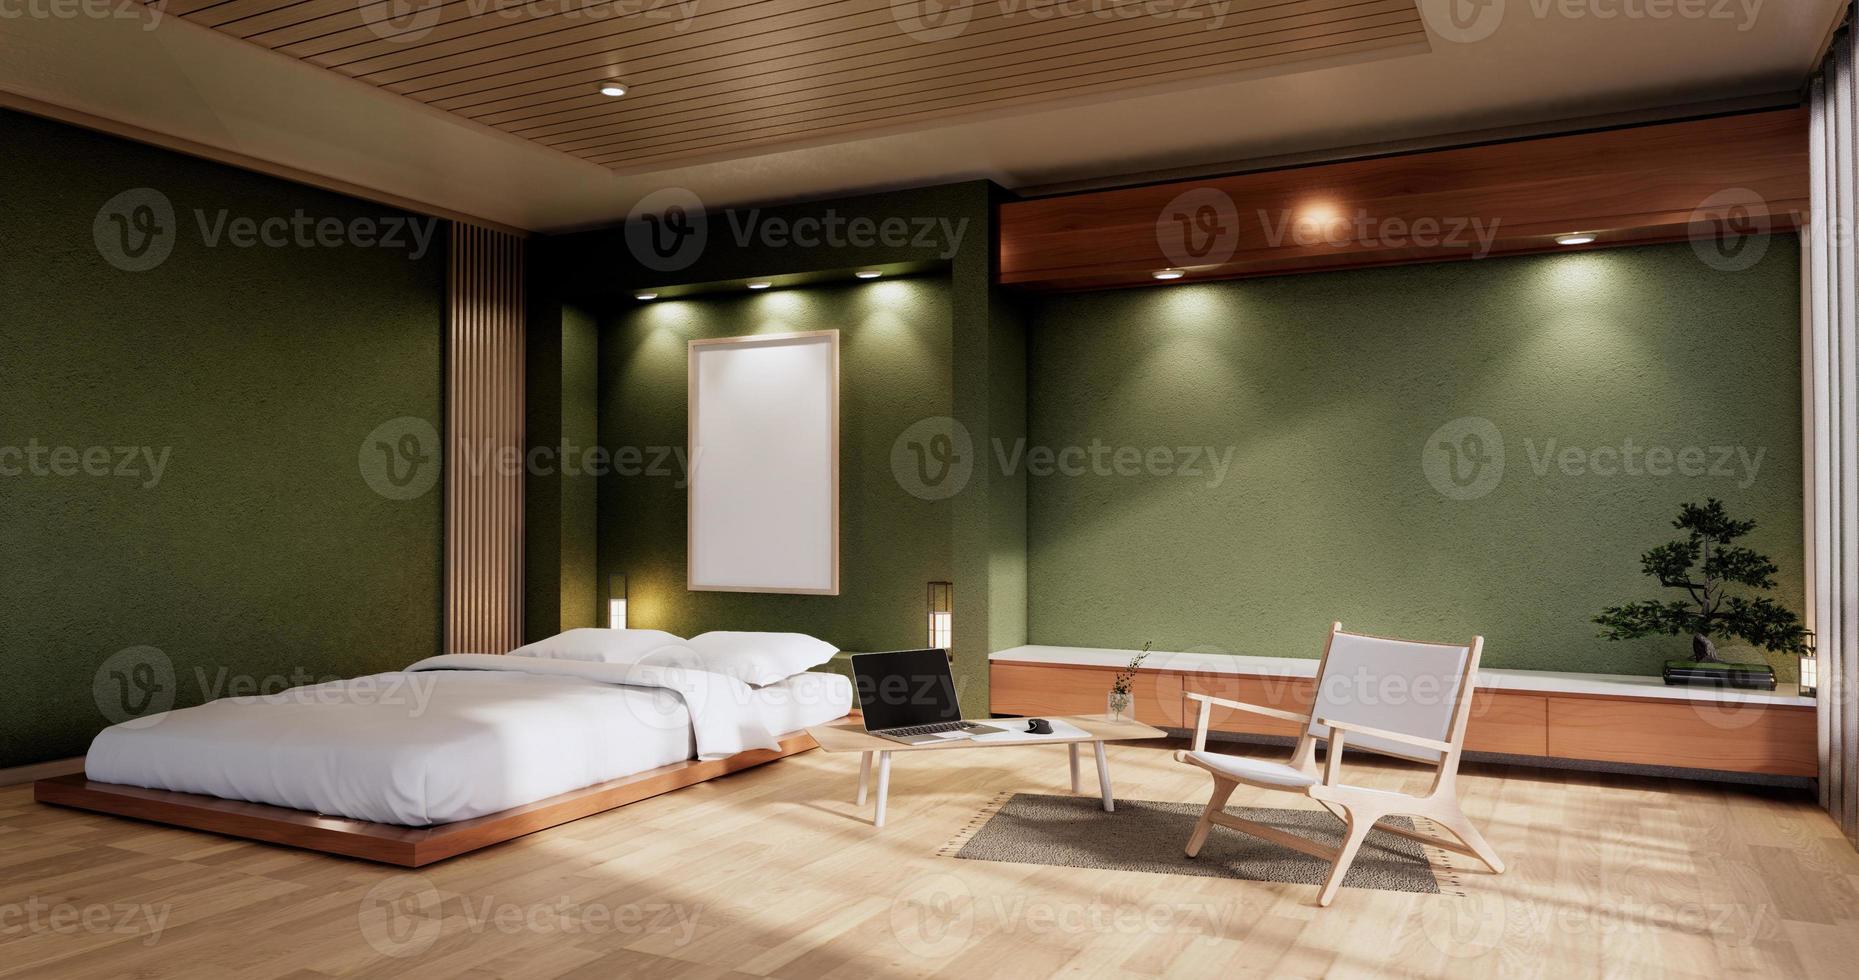 interieur mock up met zen bed plant en decoratie in japanse groene slaapkamer. 3D-rendering. foto